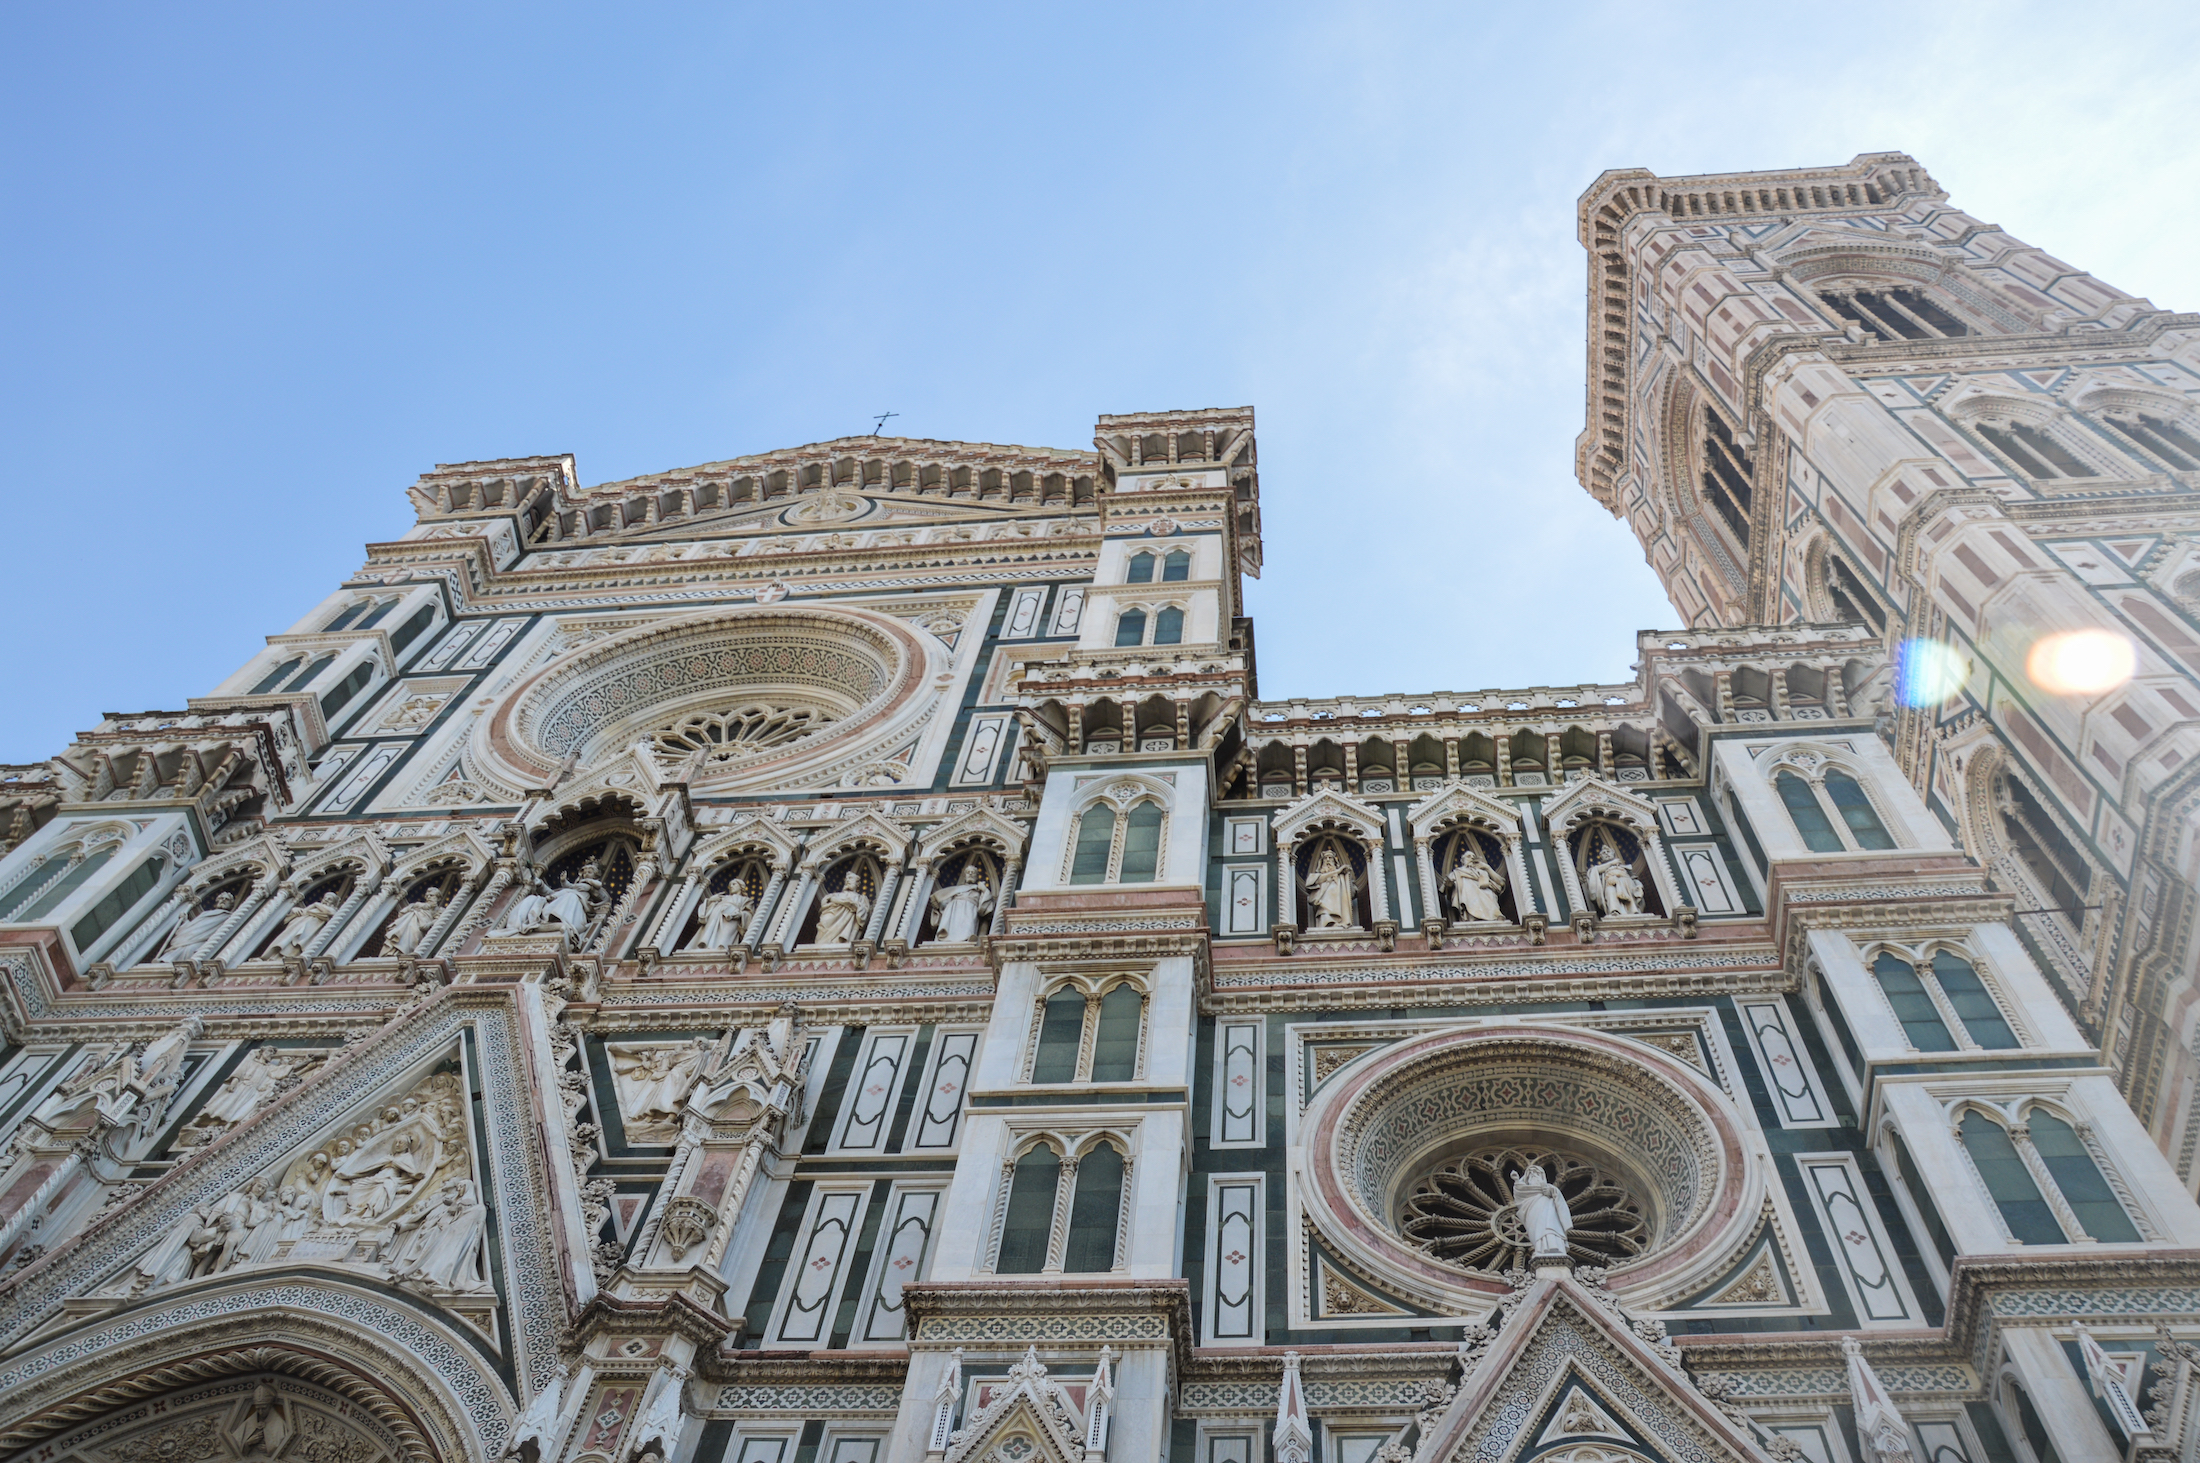 Er zijn zoveel architectonische juweeltjes te vinden, zoals de beroemde Duomo (kathedraal) van Florence